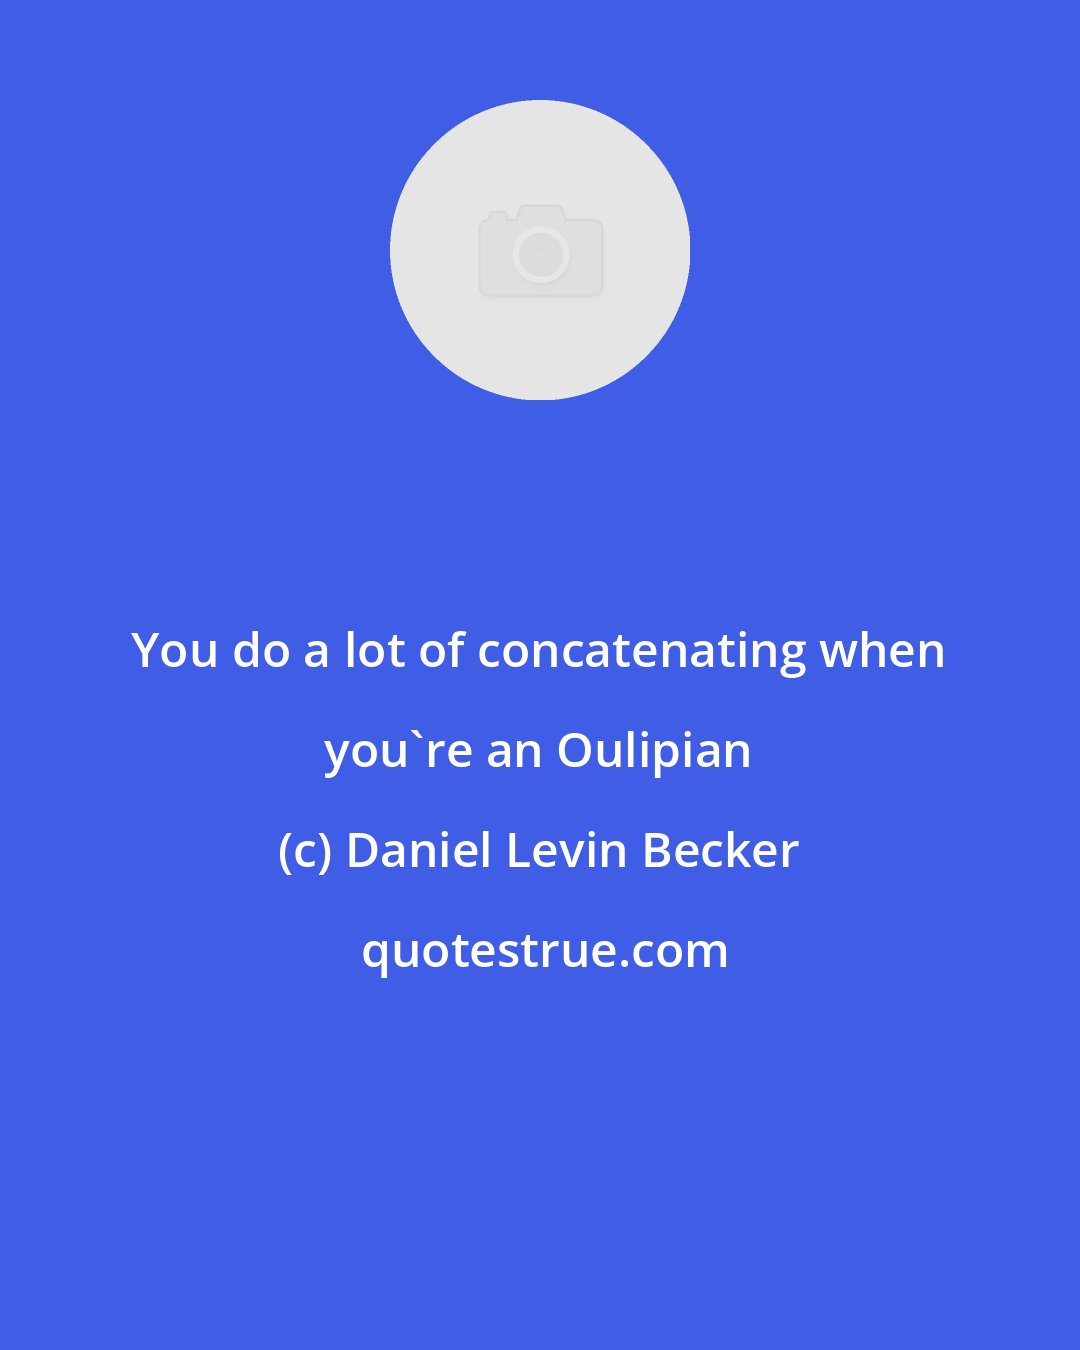 Daniel Levin Becker: You do a lot of concatenating when you're an Oulipian